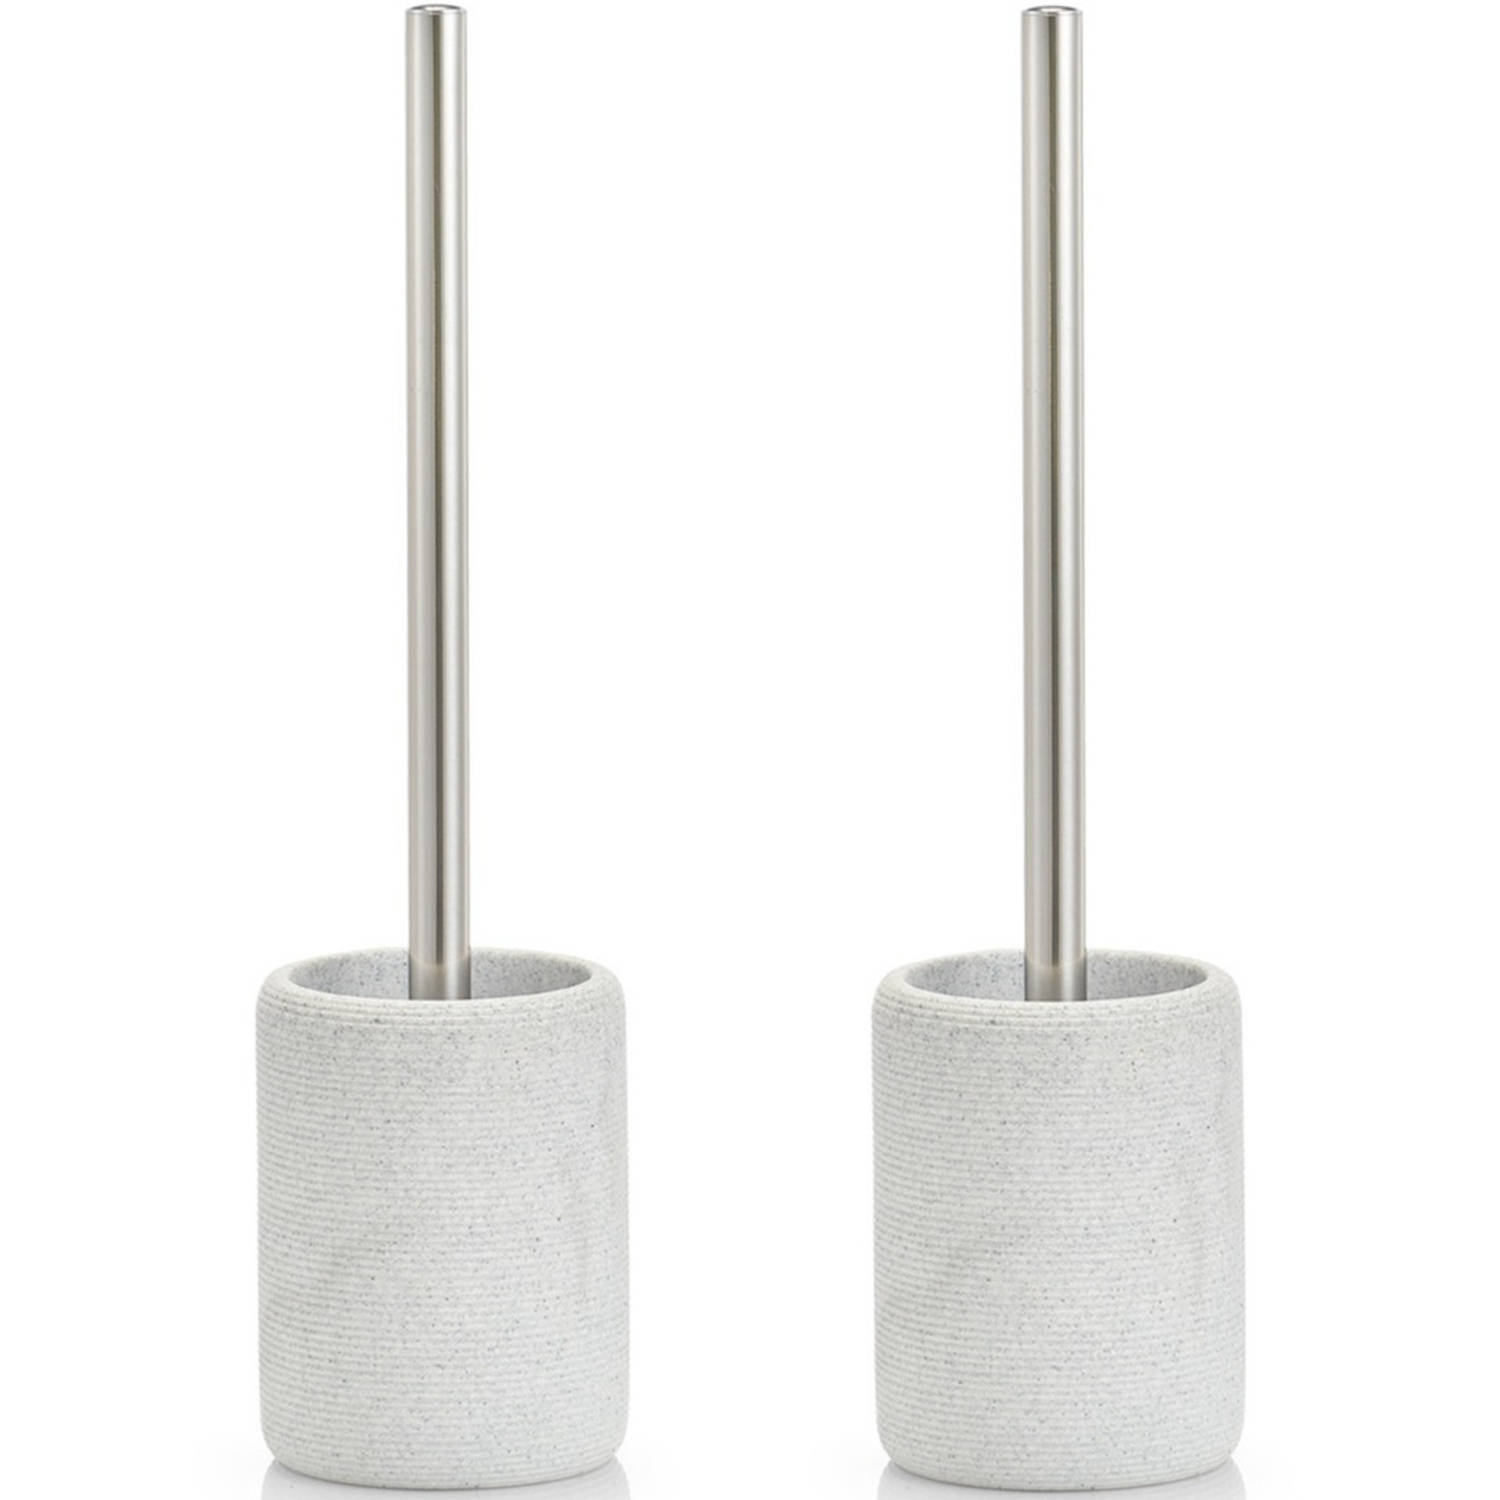 ZELLER Set van 2x stuks wc/toiletborstels met grijze houder 36 cm - Badkamer/toilet accessoires/benodigdheden